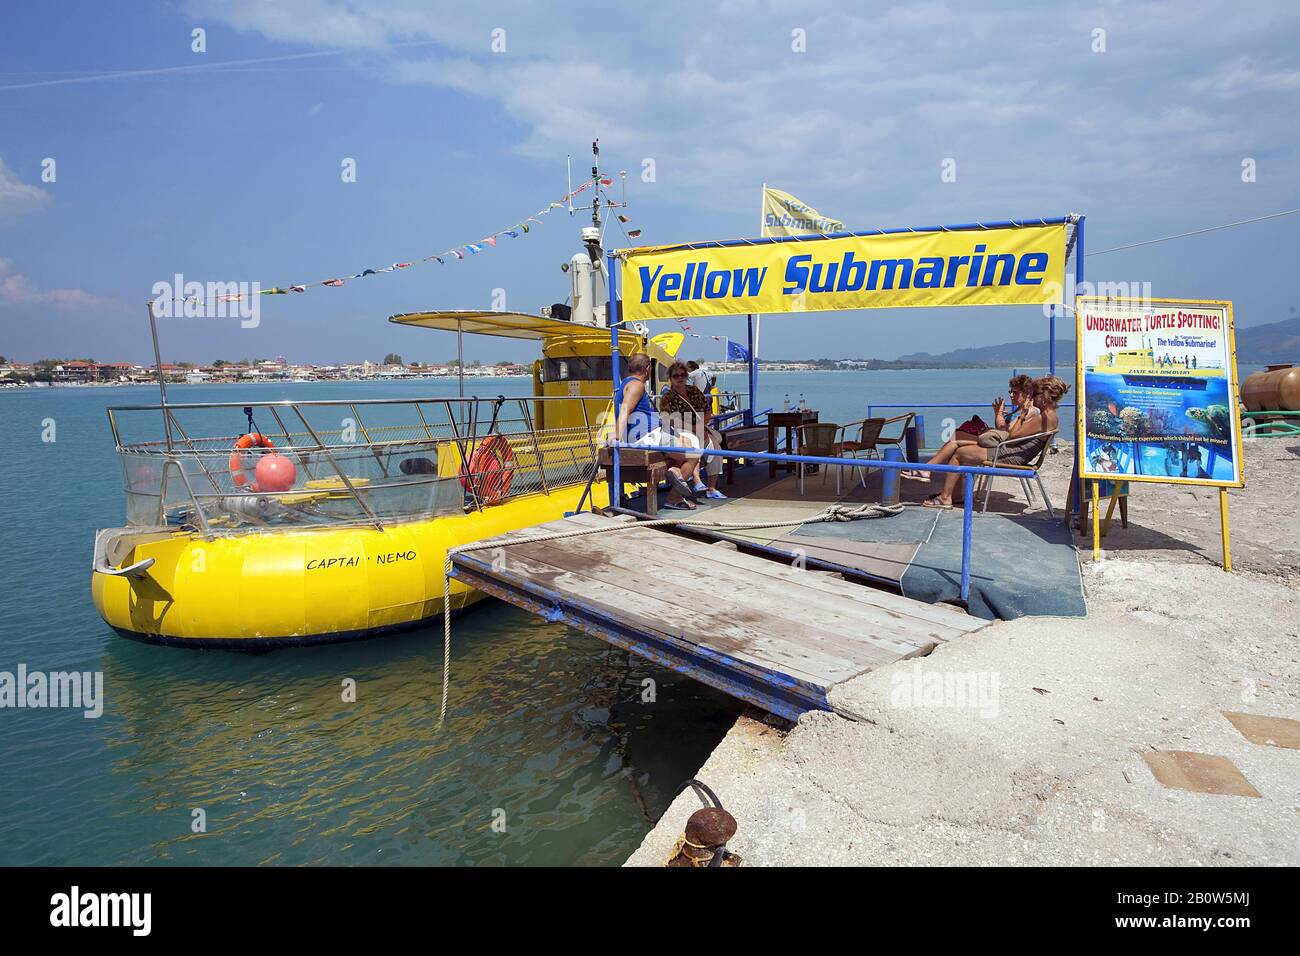 Unterseeboot im Hafen von Laganas, Zakynthos, Griechenland | Yellow submarine at the harbour of Laganas, Zakynthos island, Greece Stock Photo